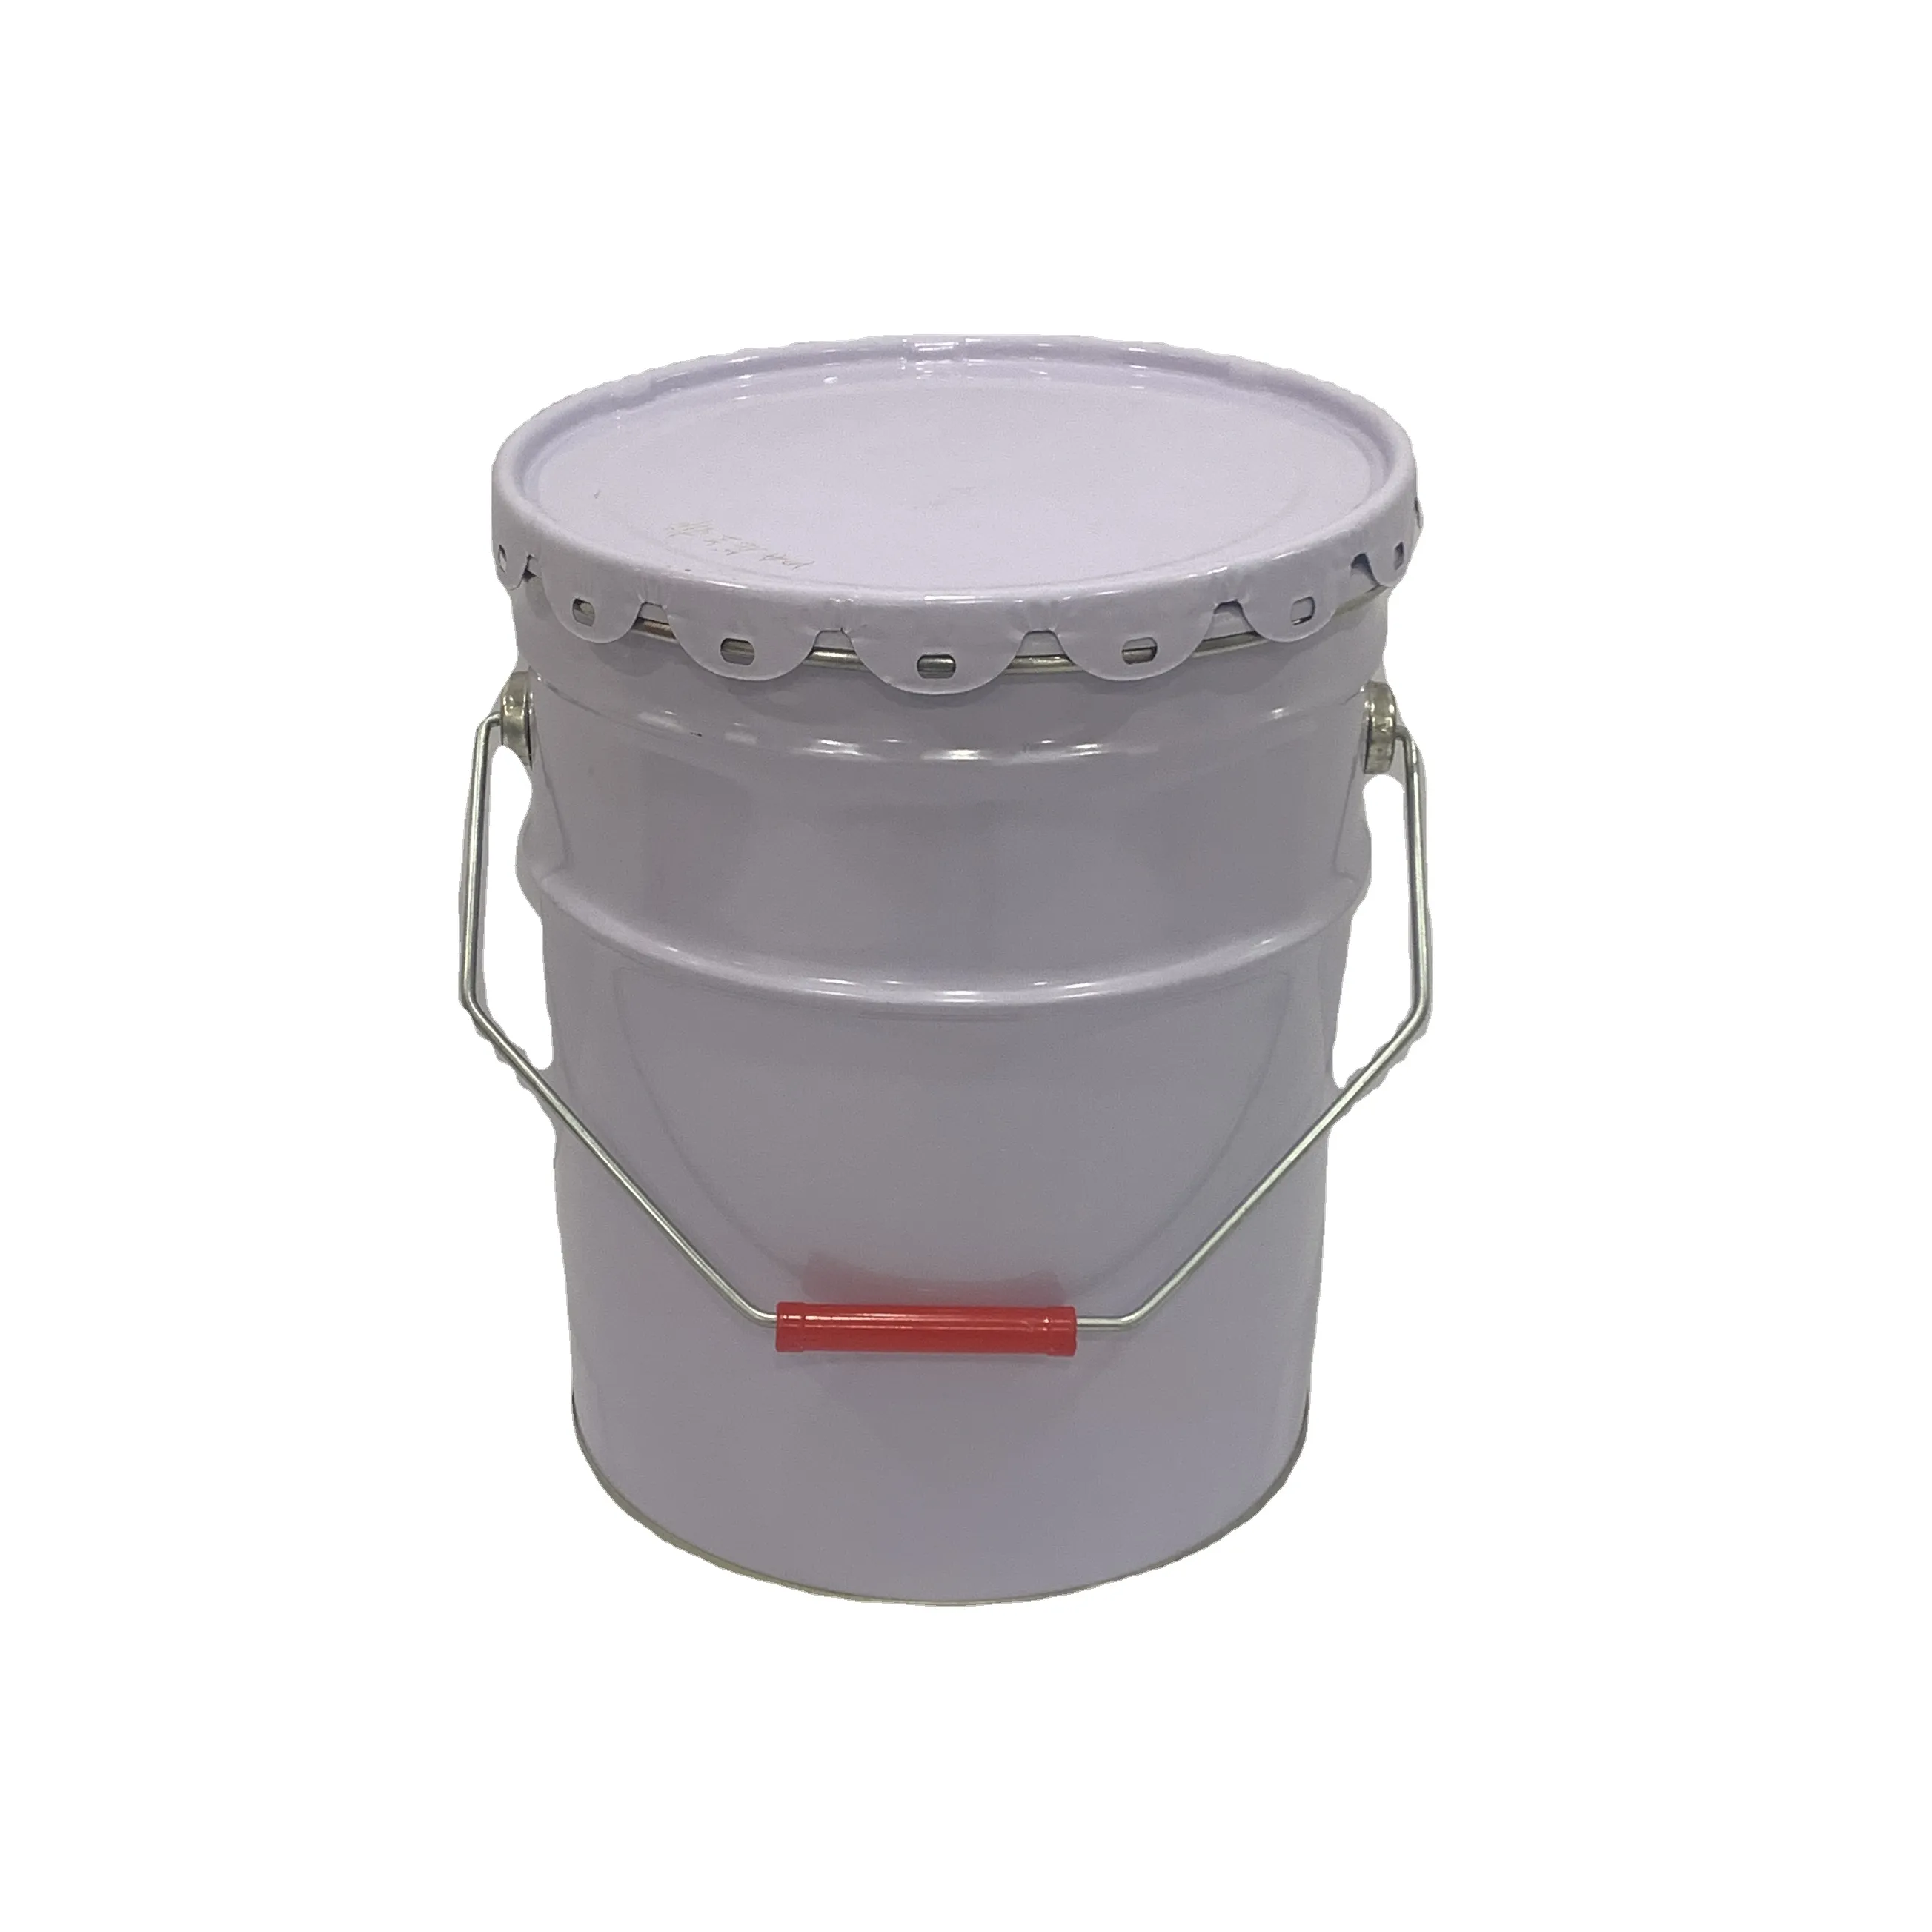 Tambor de lata cilíndrico reutilizável 20L para armazenamento e embalagem de produtos químicos na categoria de latas de metal